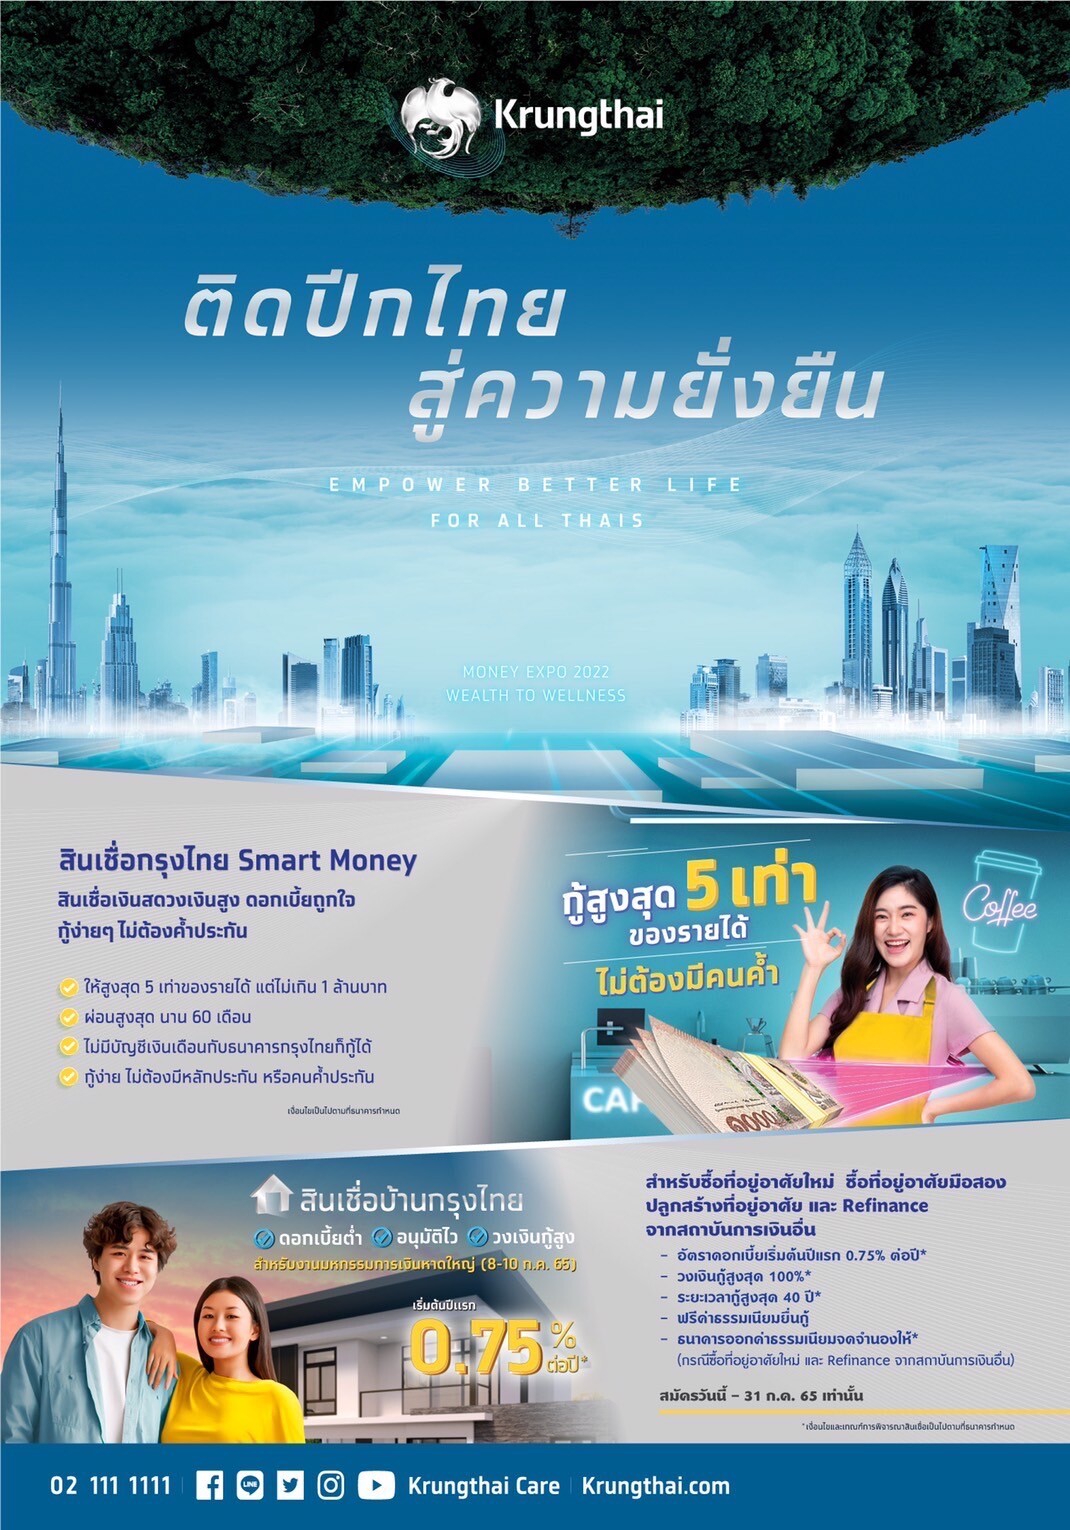 รมช.มหาดไทย เยี่ยมชมบูธกรุงไทย "ติดปีกไทยสู่ความยั่งยืน" ในงาน MONEY EXPO หาดใหญ่ 2022